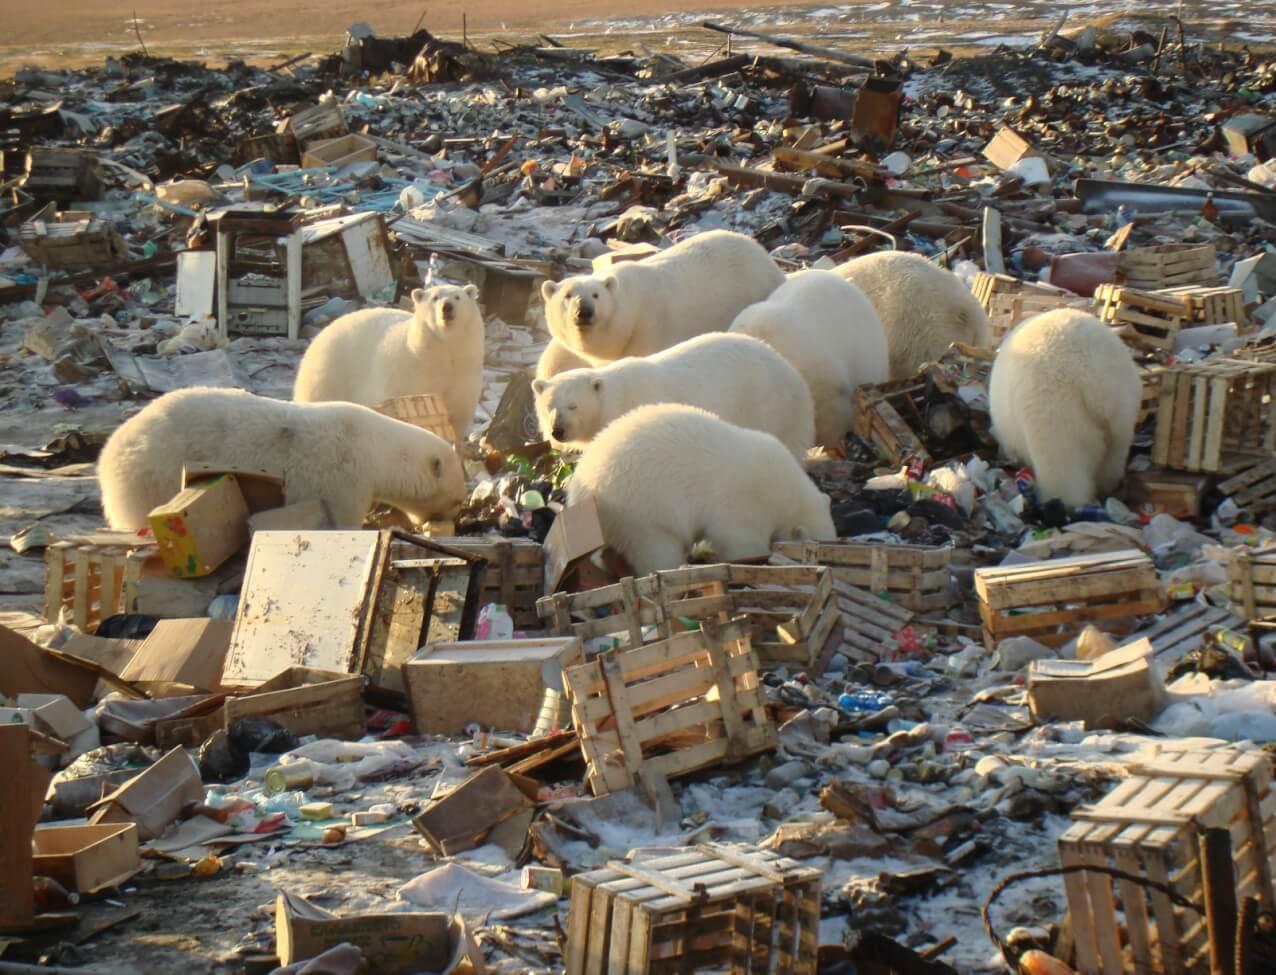 Турнир по сбору и сортировке мусора пройдет во всех регионах Арктики